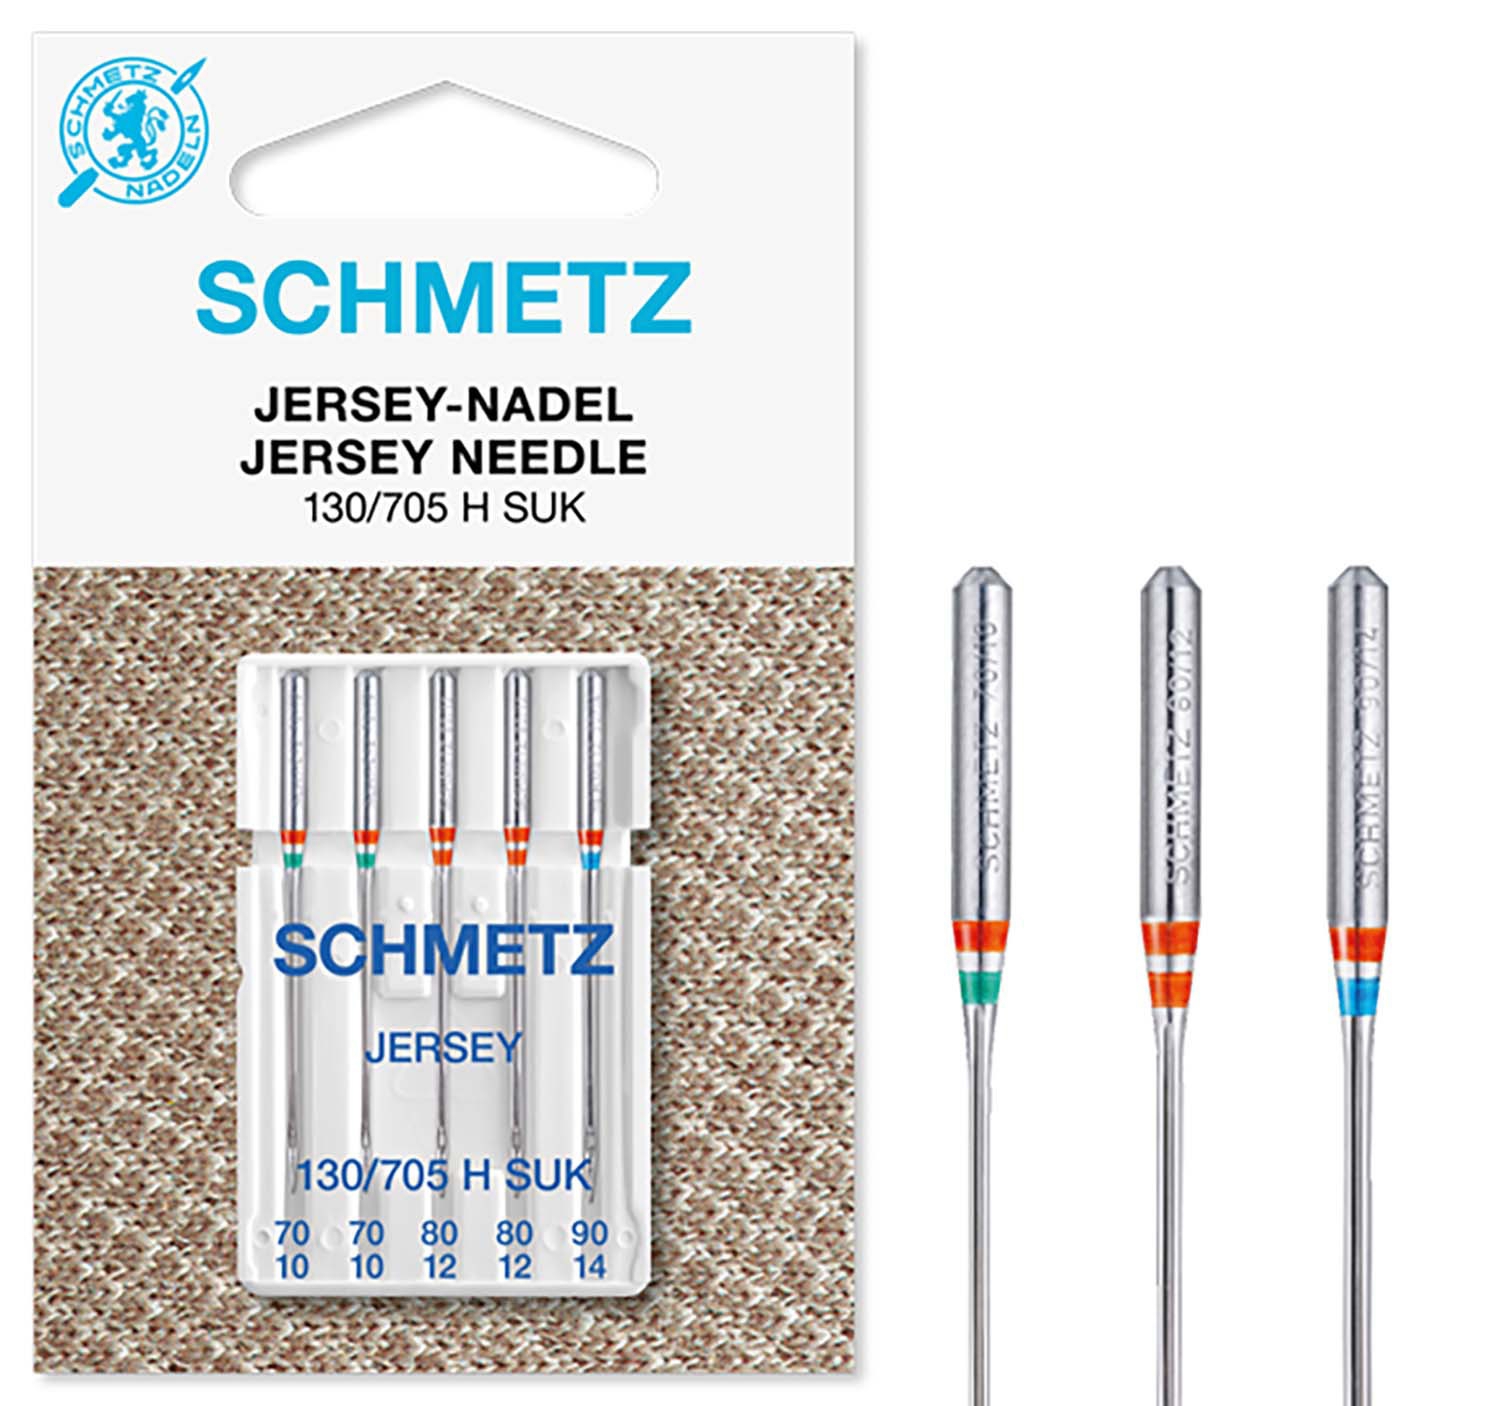 SCHMETZ Nähmaschinennadeln sortiert 5 Jersey-Nadeln 130/705 H SUK 2x 70/10, 2x 80/12 und 1x 90/14